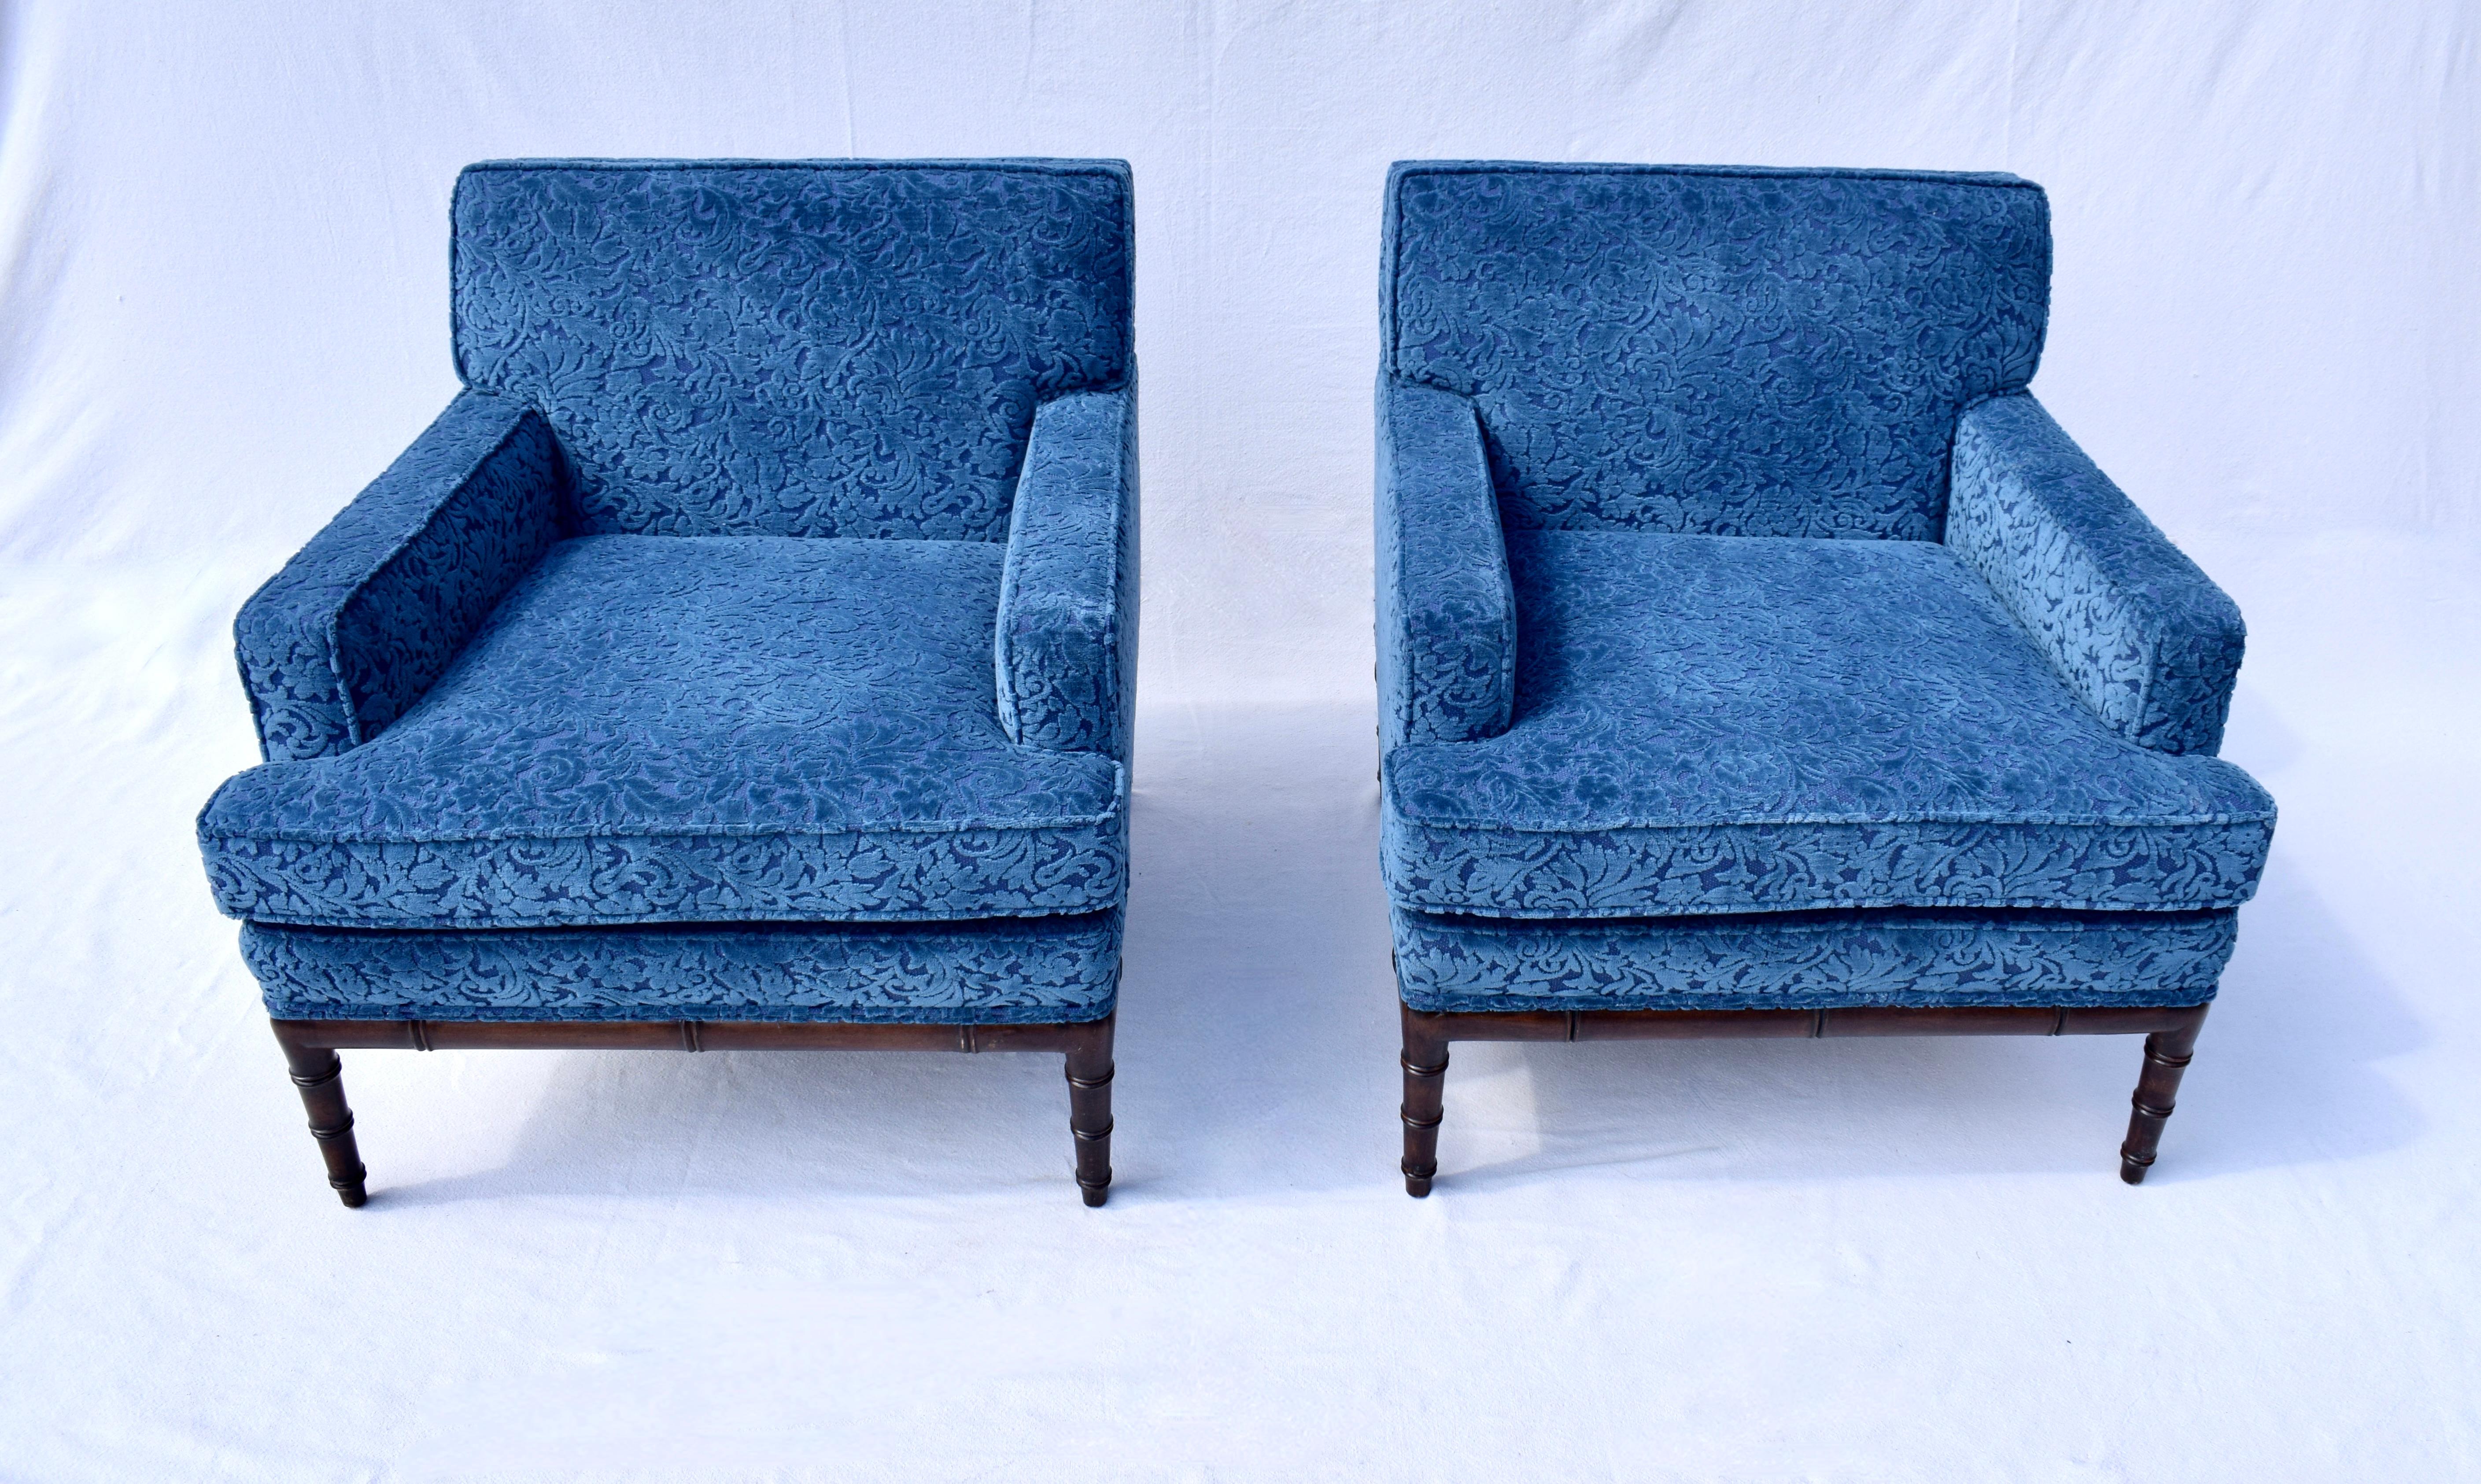 Paire de fauteuils club des années 1960 en velours bleu indigo vibrant, avec un style en faux bambou sur chaque base, attribués à IRWIN. Ces beautés du milieu du 20e siècle sont entièrement restaurées et prêtes à l'emploi. Les housses d'accoudoir